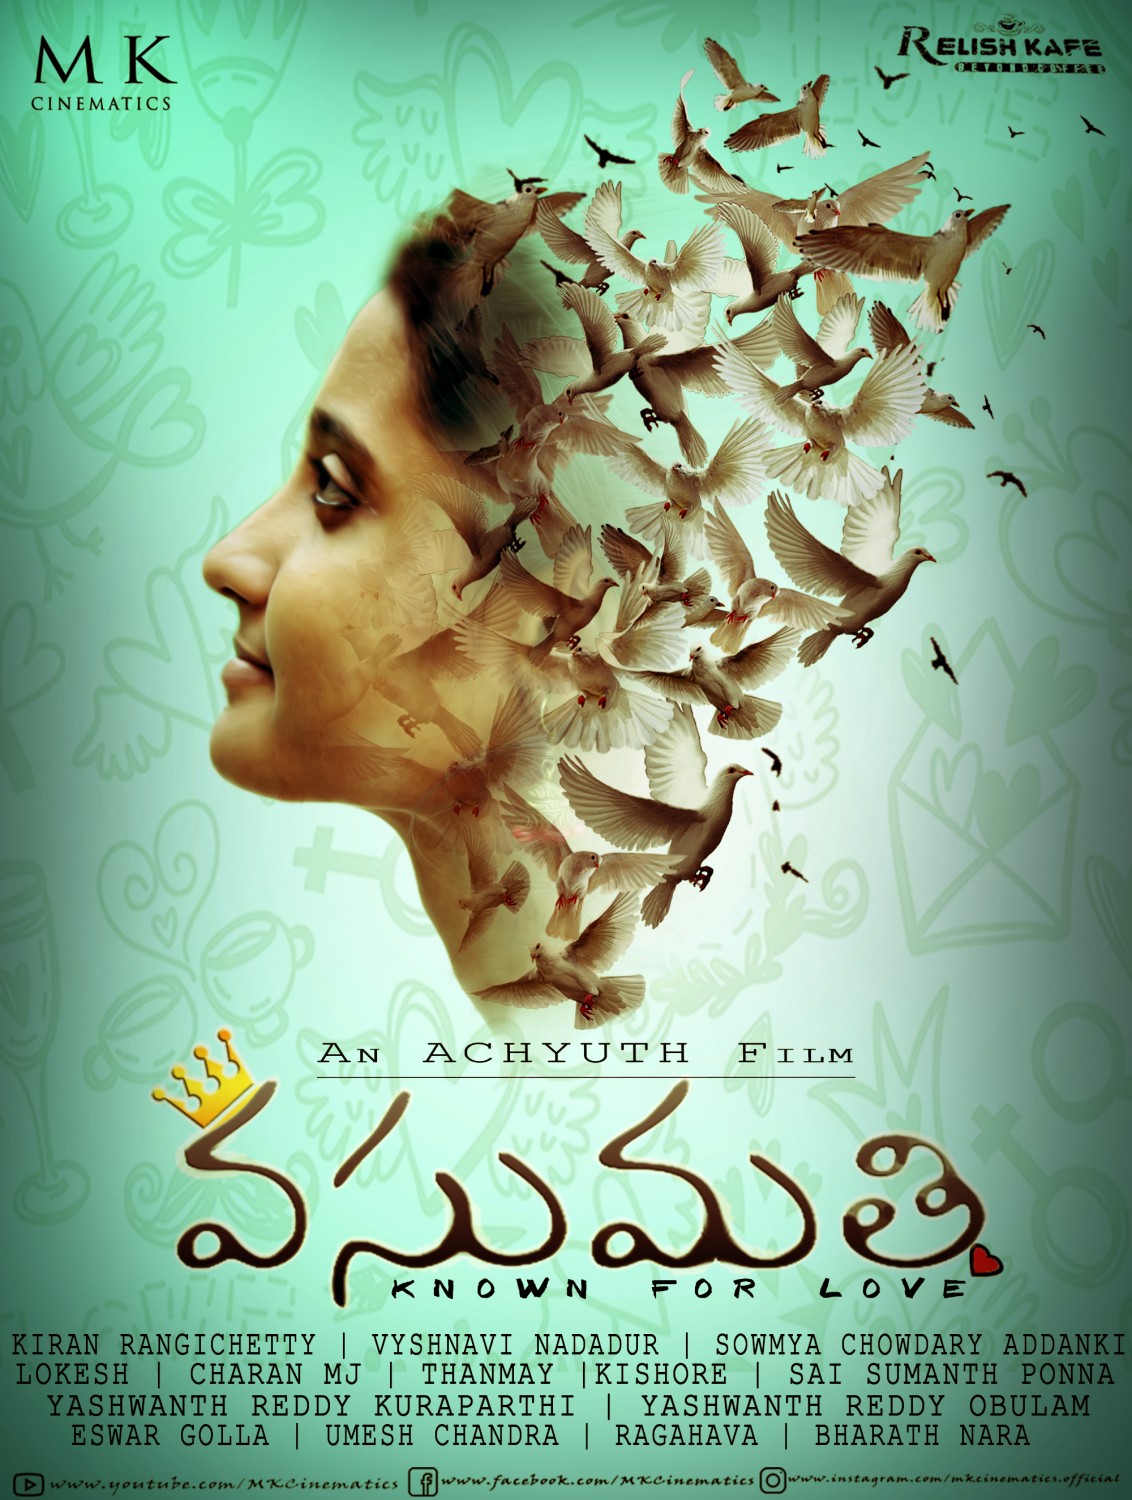 Extra Large Movie Poster Image for Vasumathi